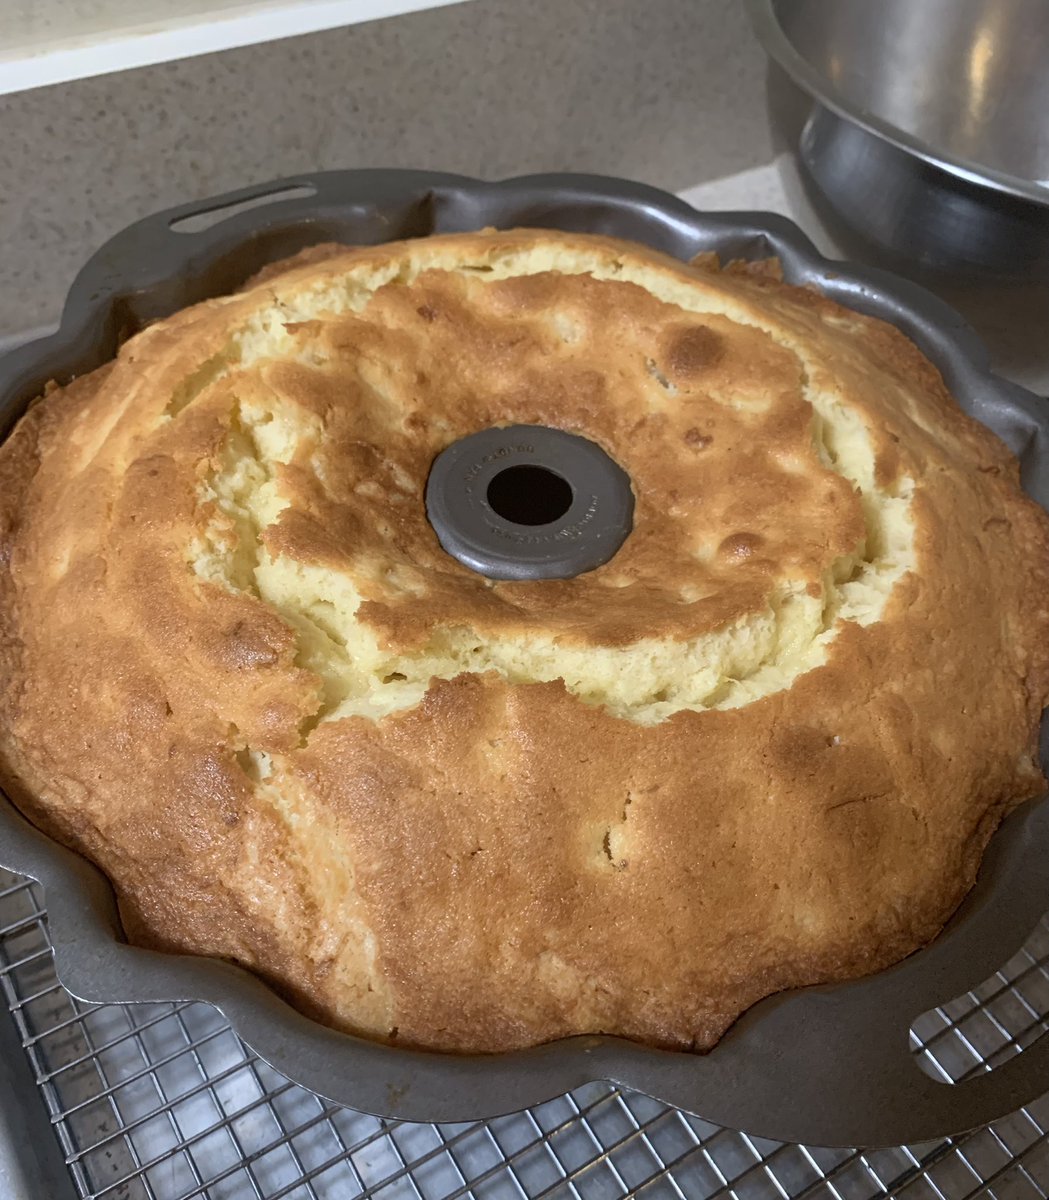 Sunday baking. 

Pineapple pound cake…